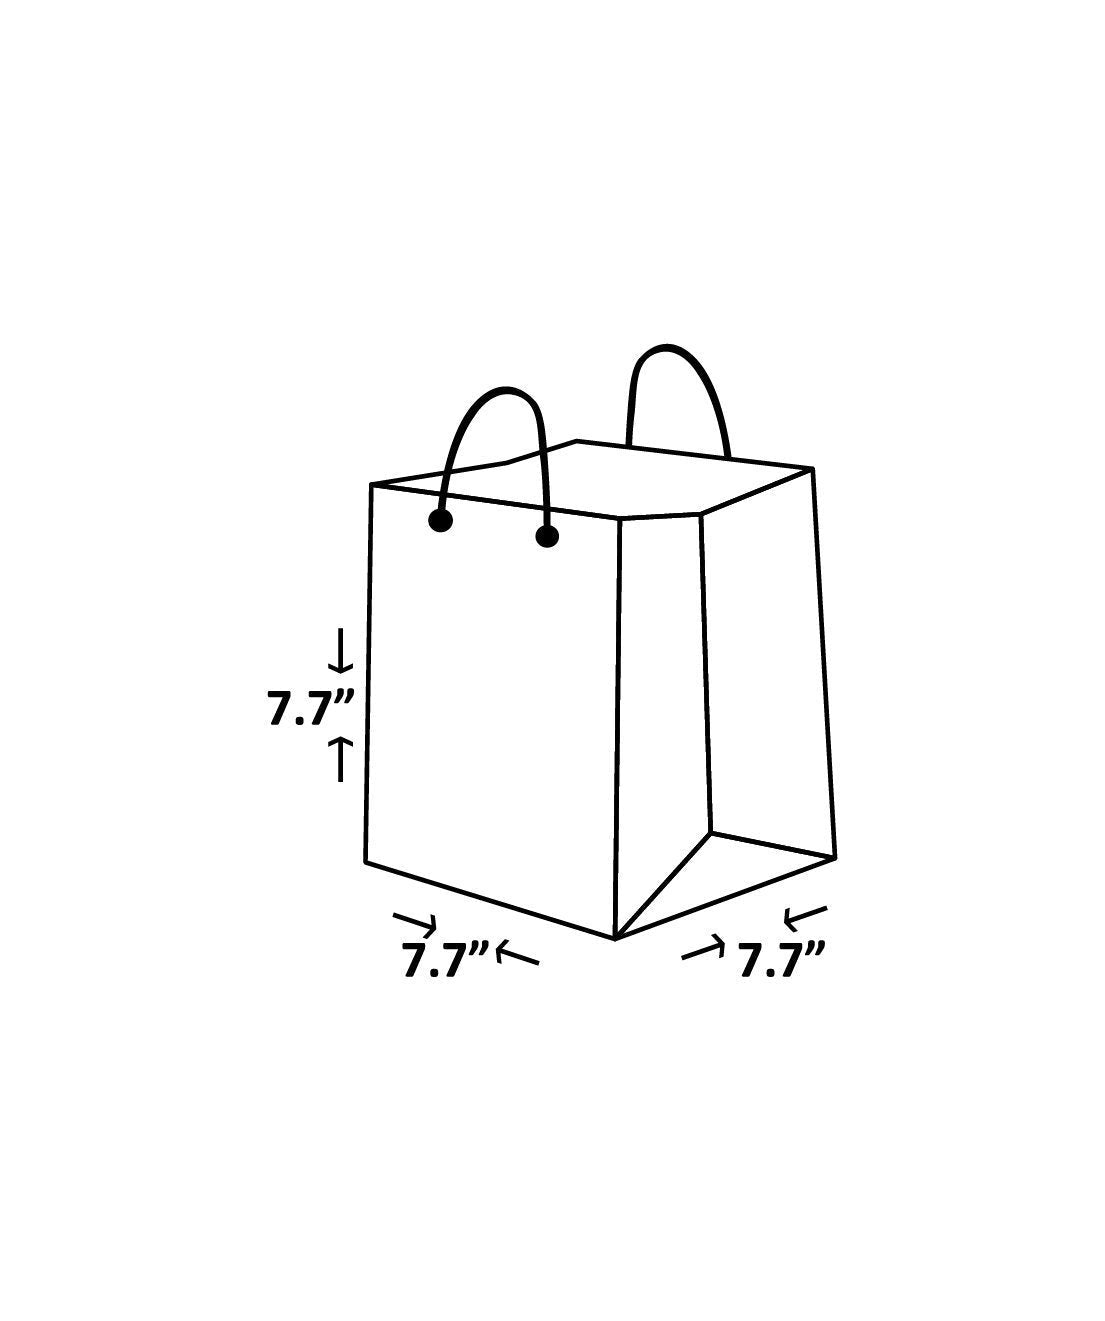 Craft Paper Bag - Line Pattern Design Square Paper Bag For Multupupose Packaging